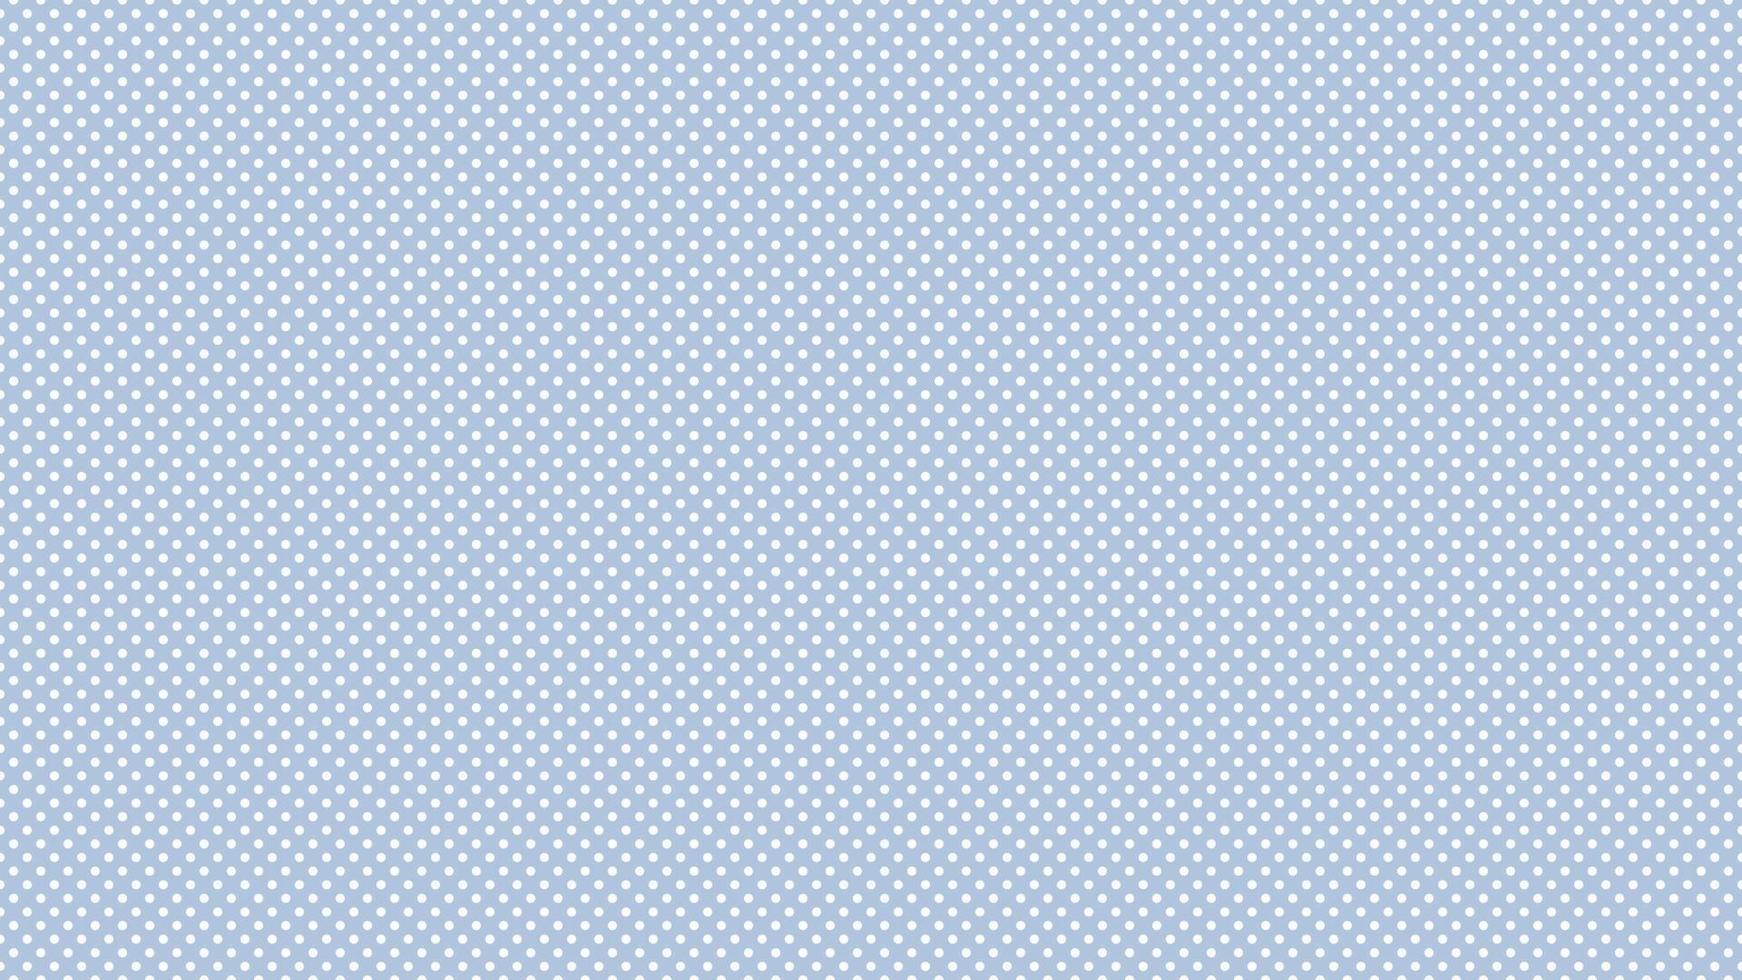 Weiß Farbe Polka Punkte Über Licht Stahl Blau Hintergrund vektor